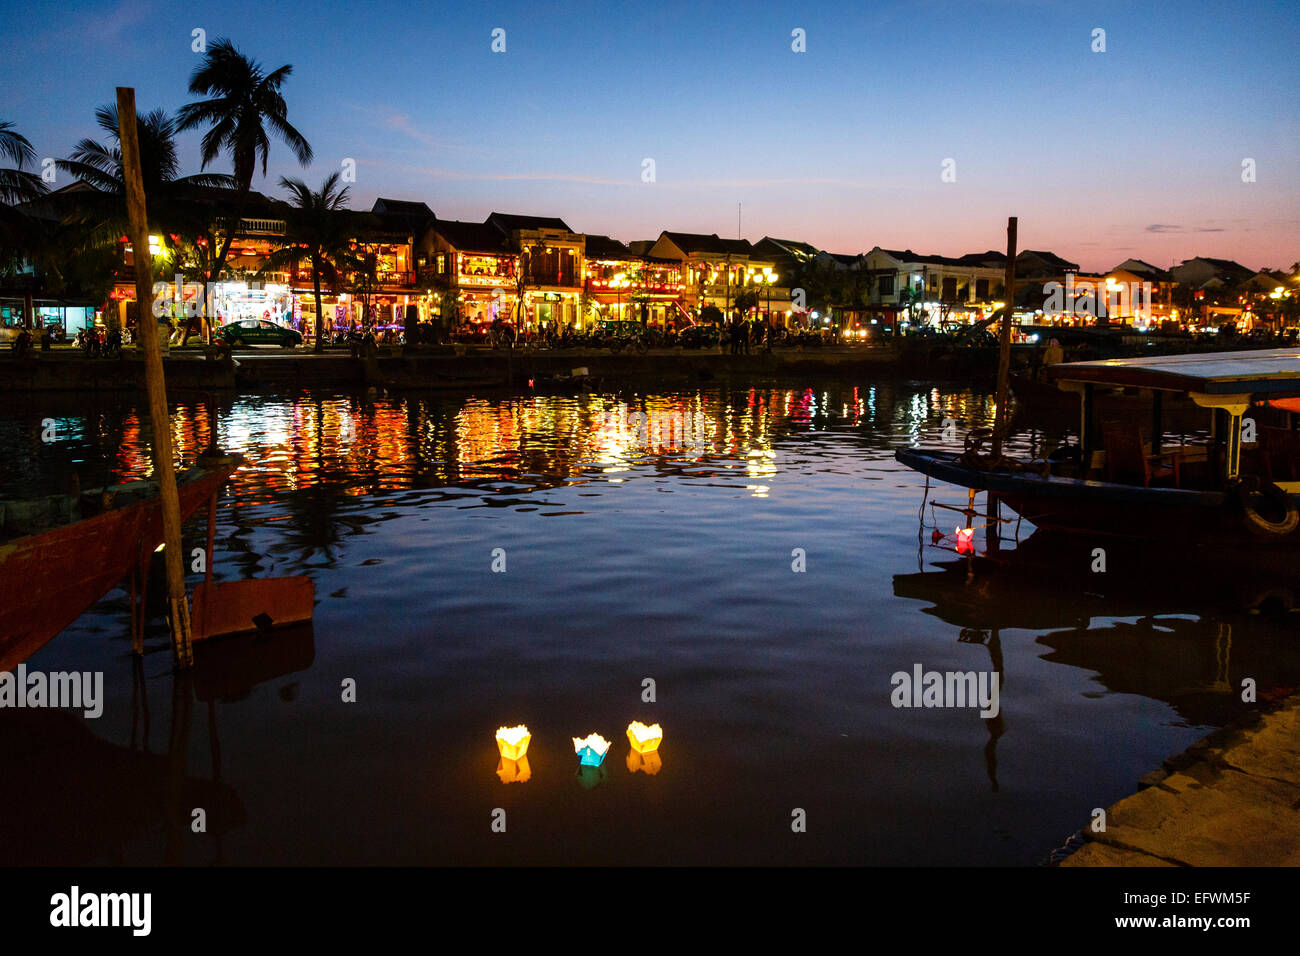 Velas Flotantes, Hoi An, Vietnam. Foto de stock